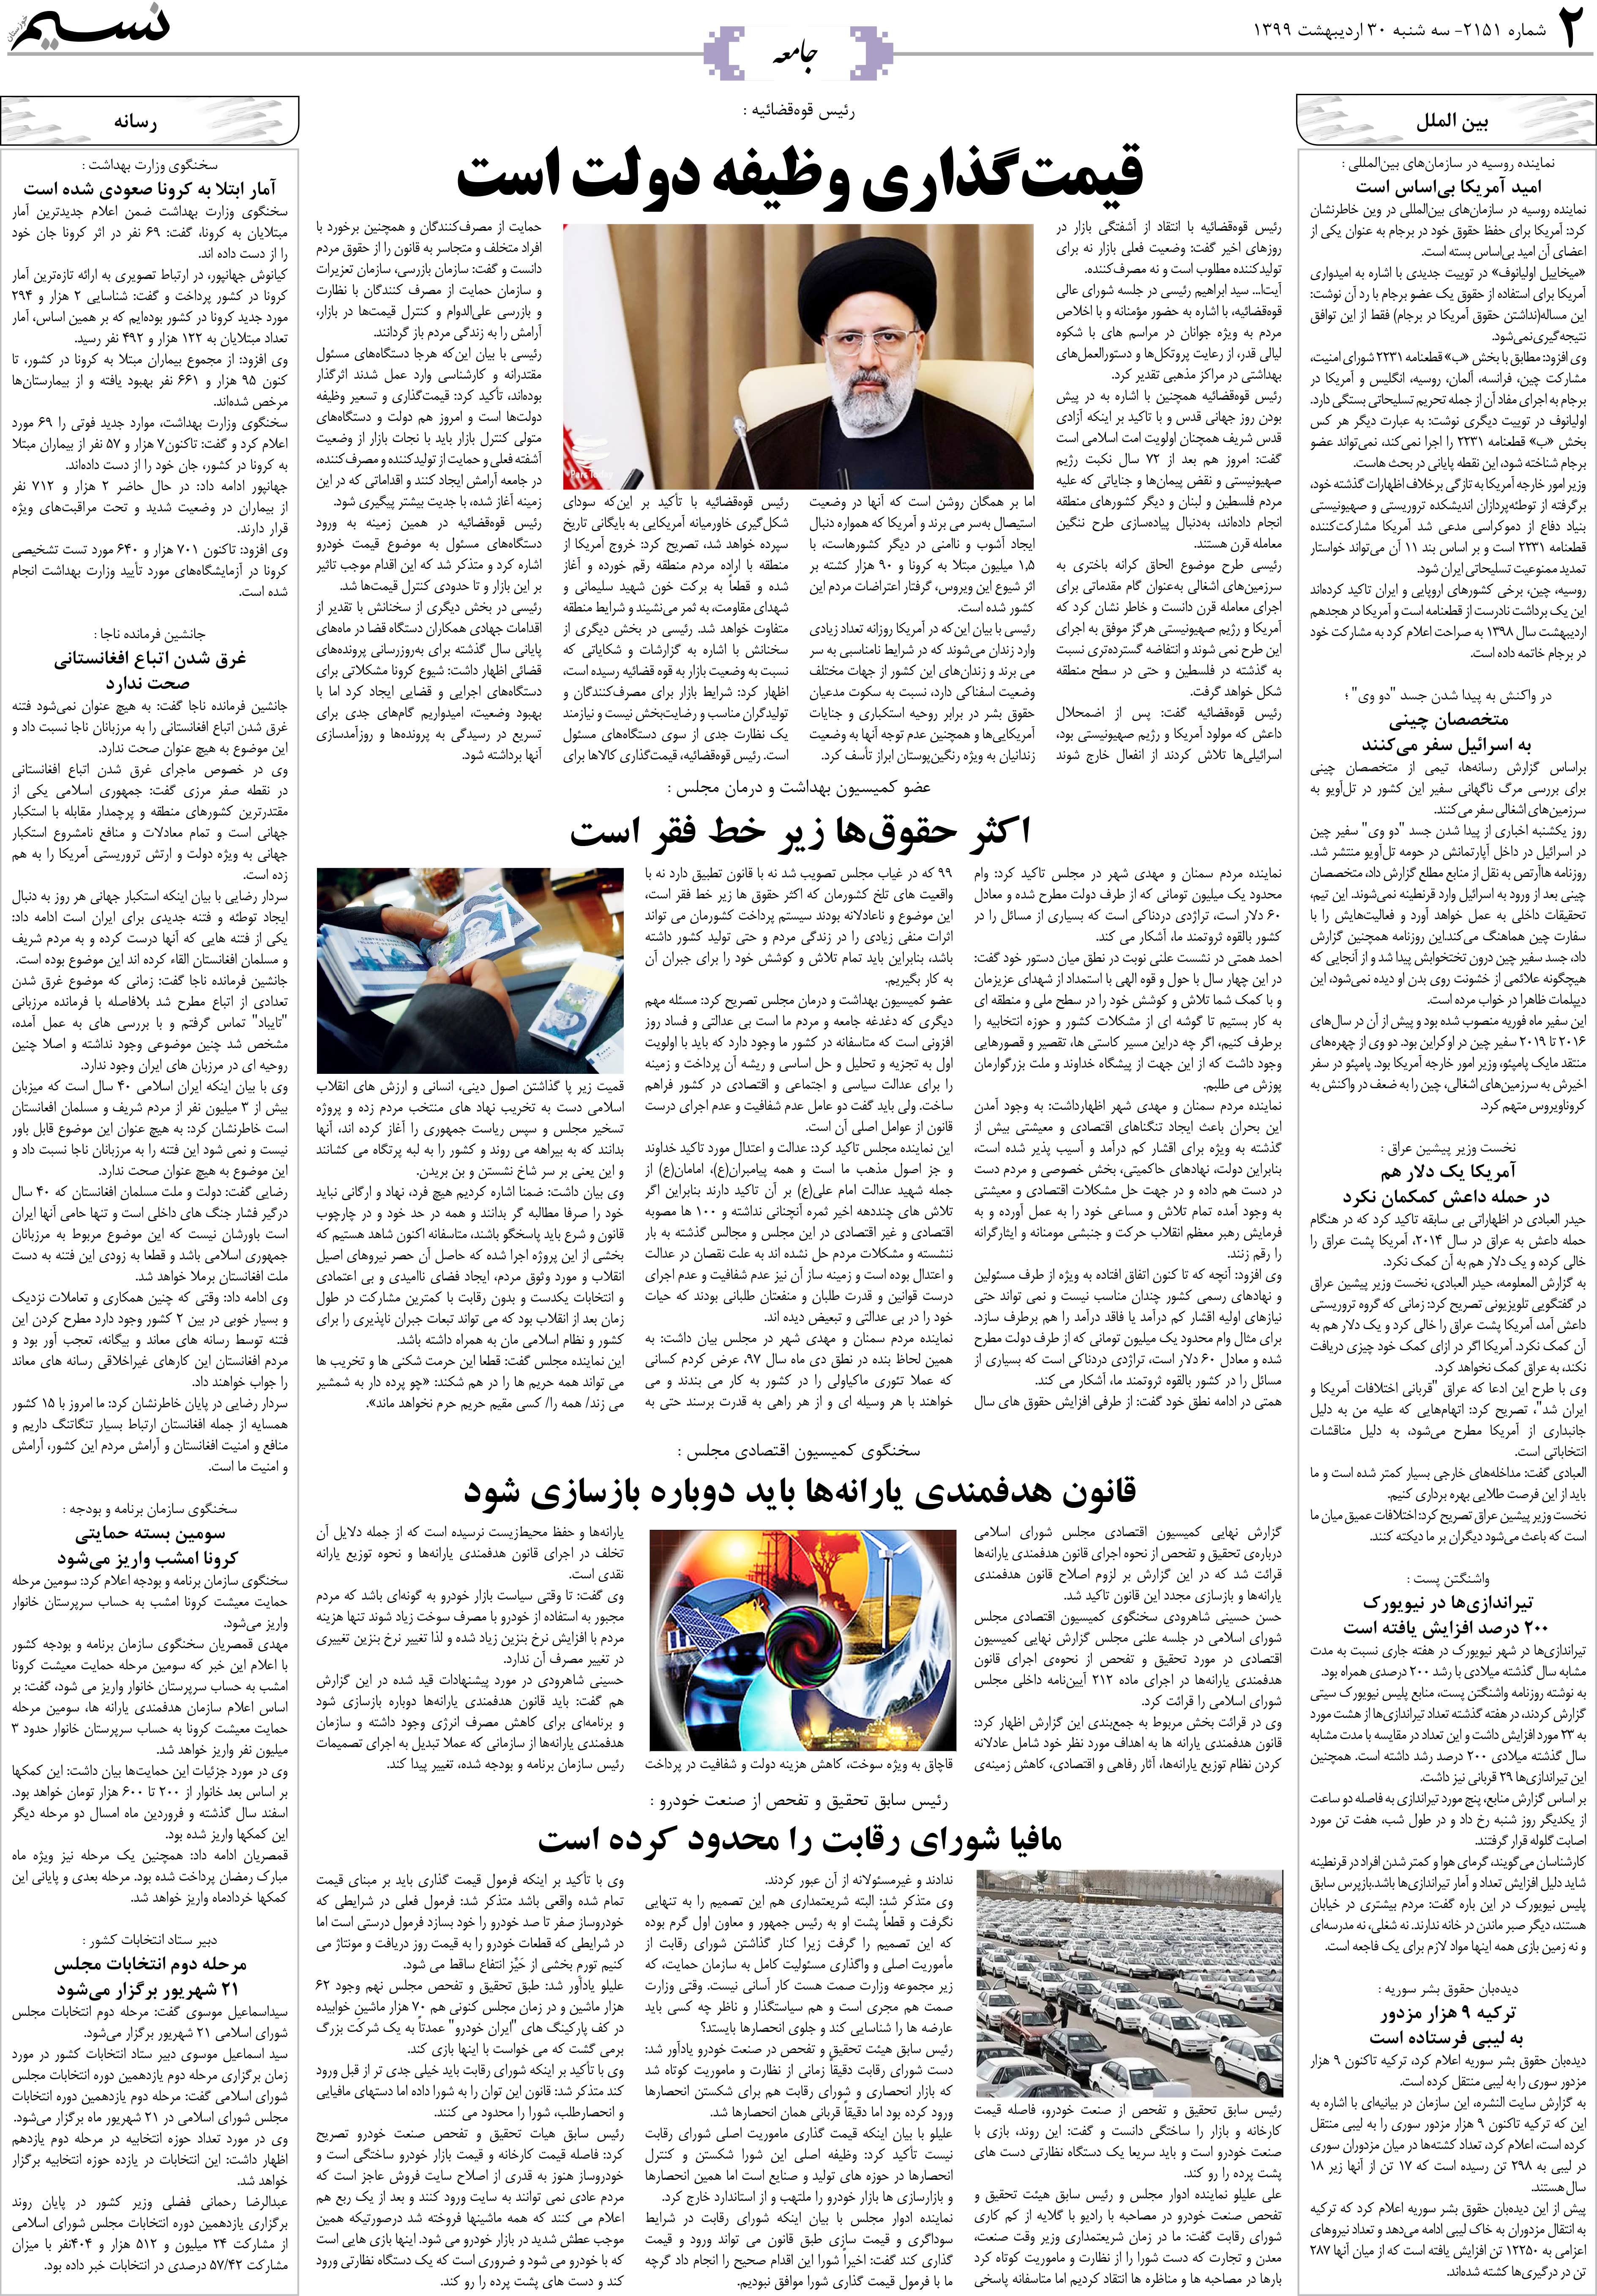 صفحه جامعه روزنامه نسیم شماره 2151